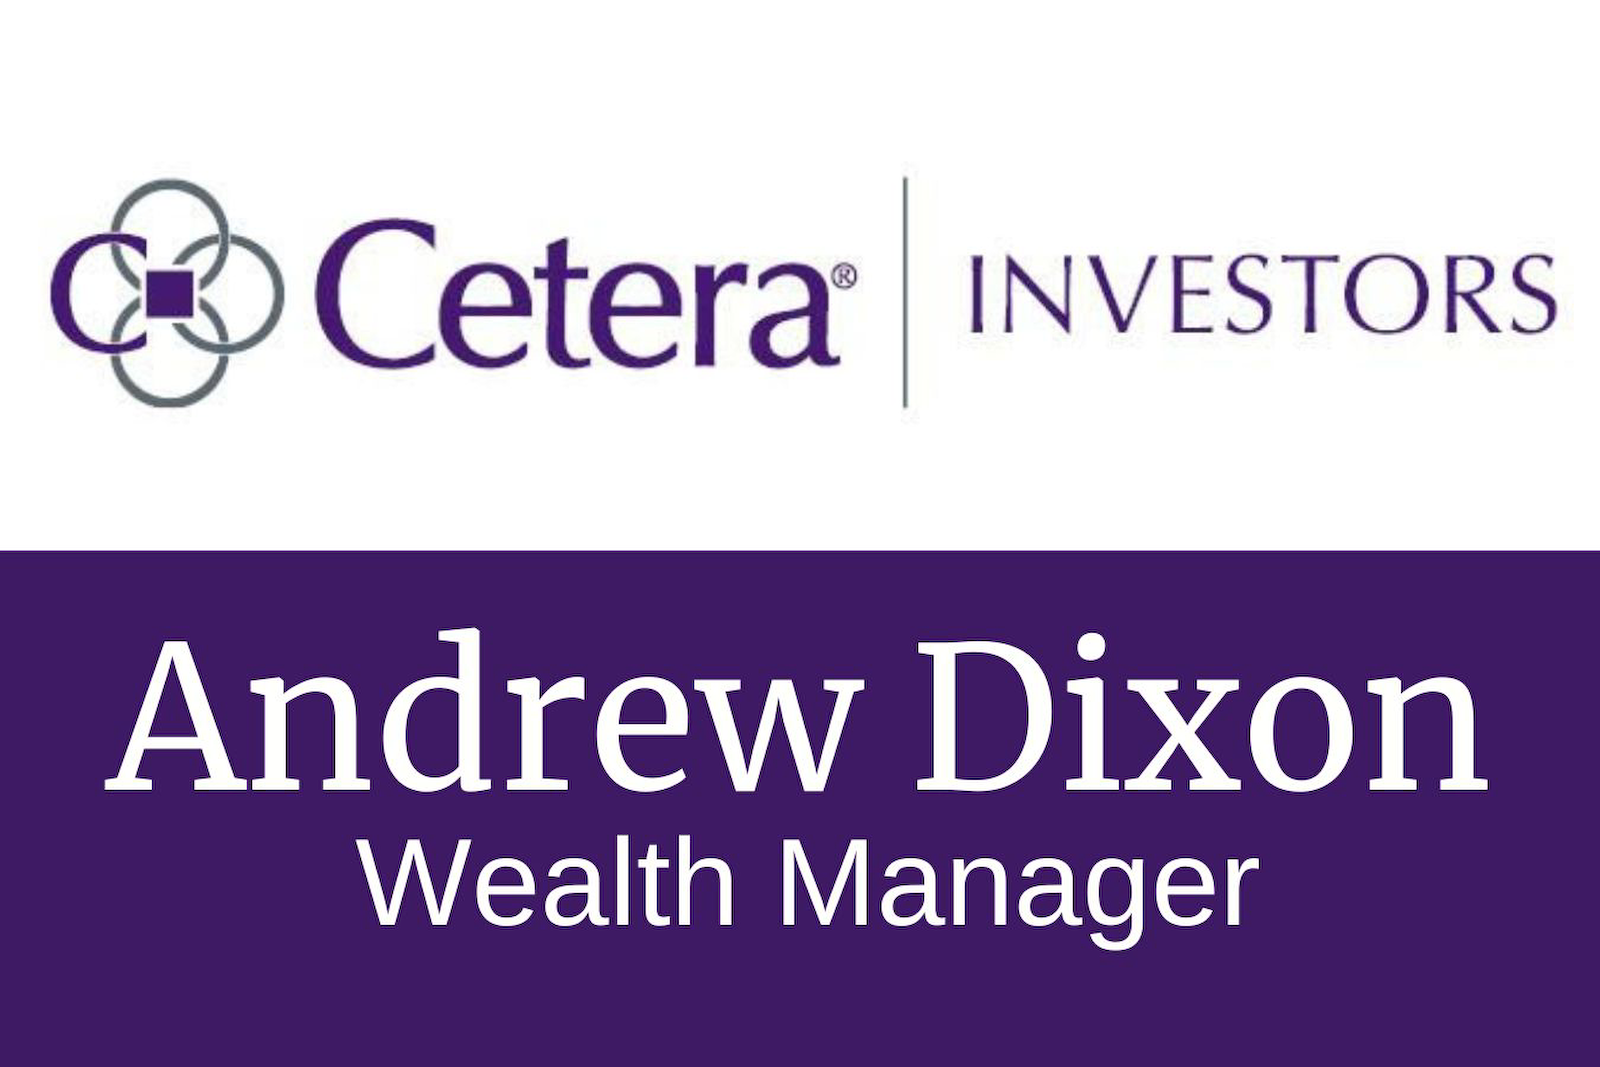 Cetera Investors - Andrew Dixon